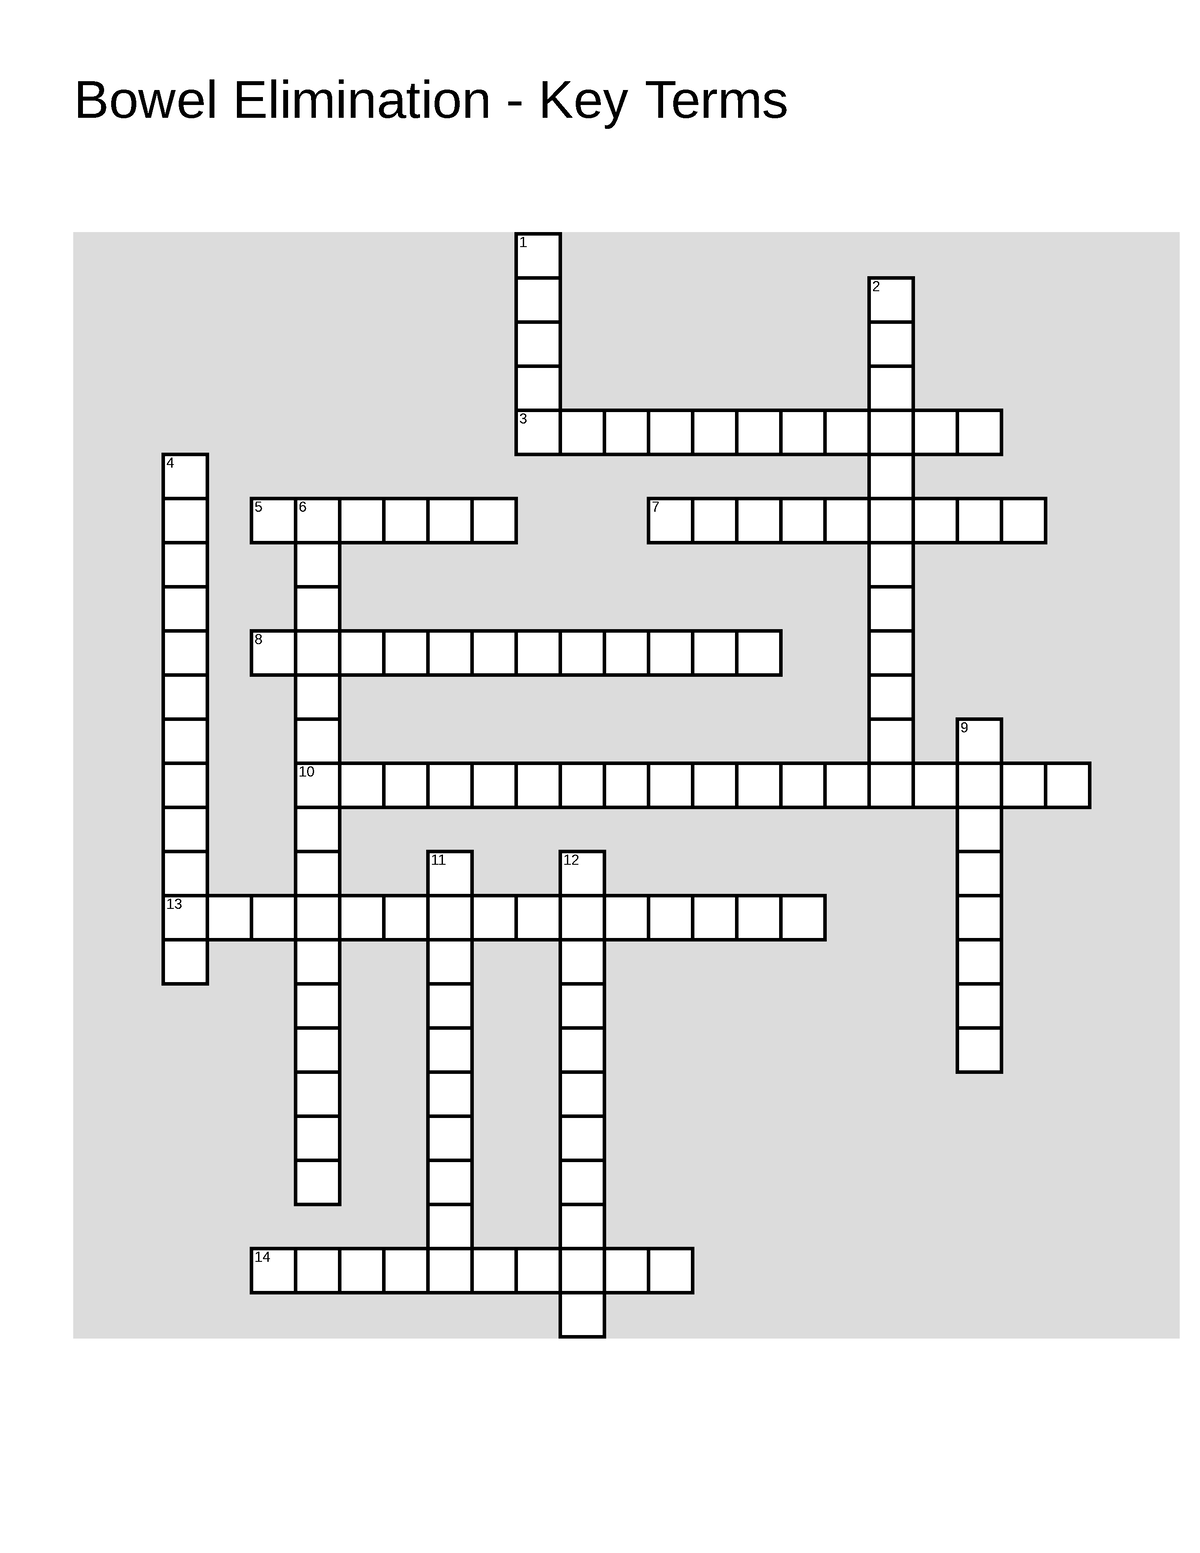 Bowel Elimination Crossword Puzzle Bowel Elimination Key Terms